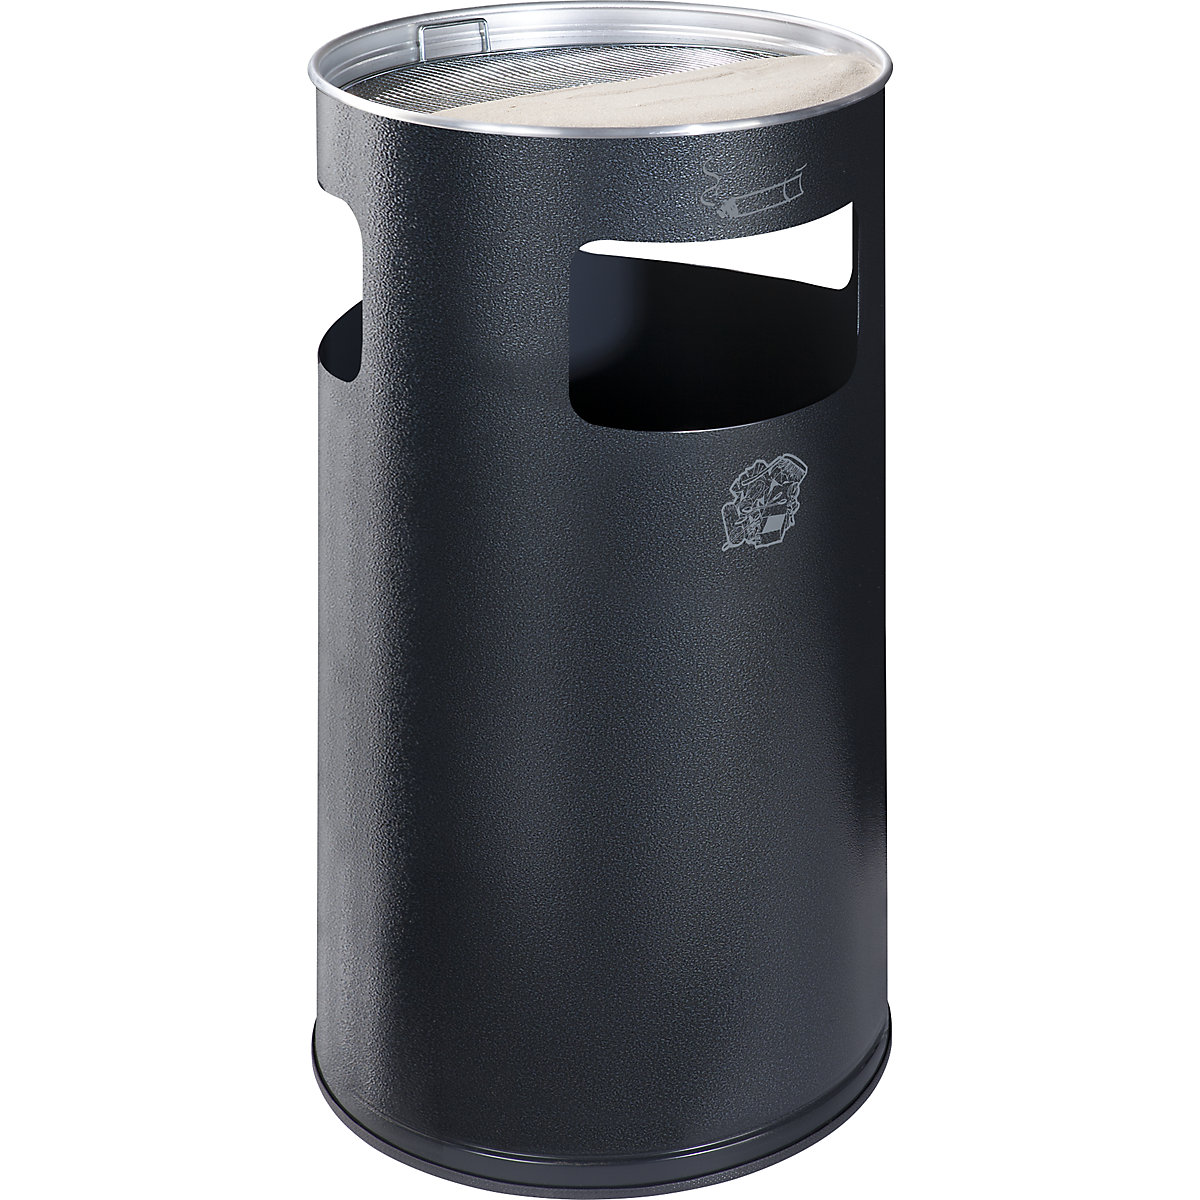 VAR – Kombinovaný popelník, objem 69 l, v x Ø 760 x 420 mm, ocelový plech, žulová